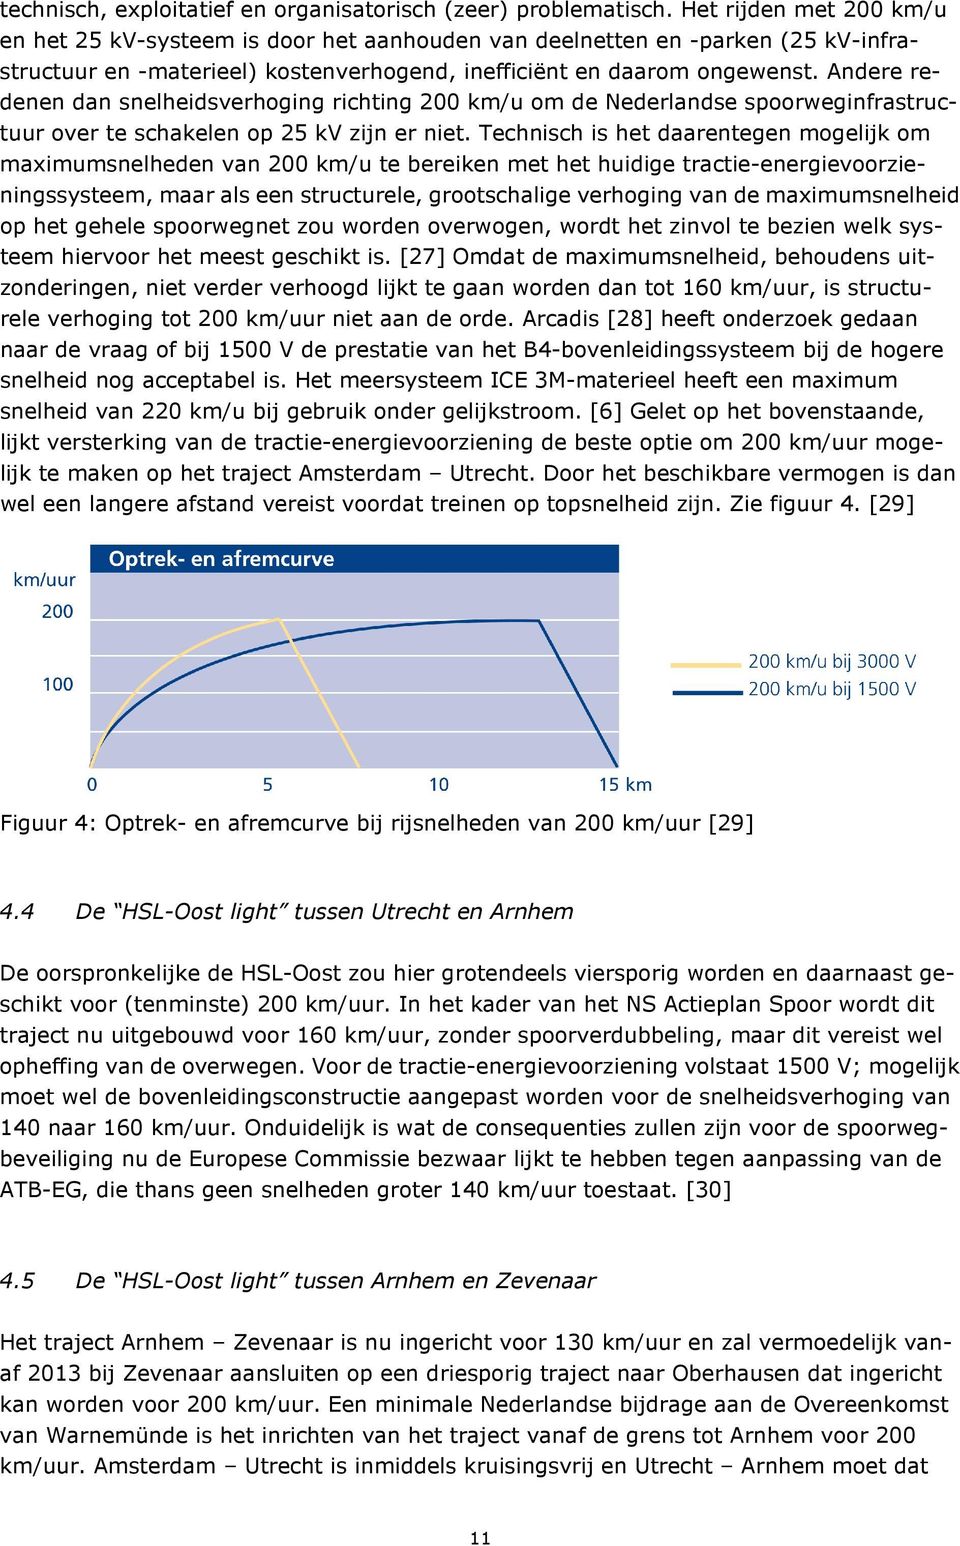 Andere redenen dan snelheidsverhoging richting 200 km/u om de Nederlandse spoorweginfrastructuur over te schakelen op 25 kv zijn er niet.